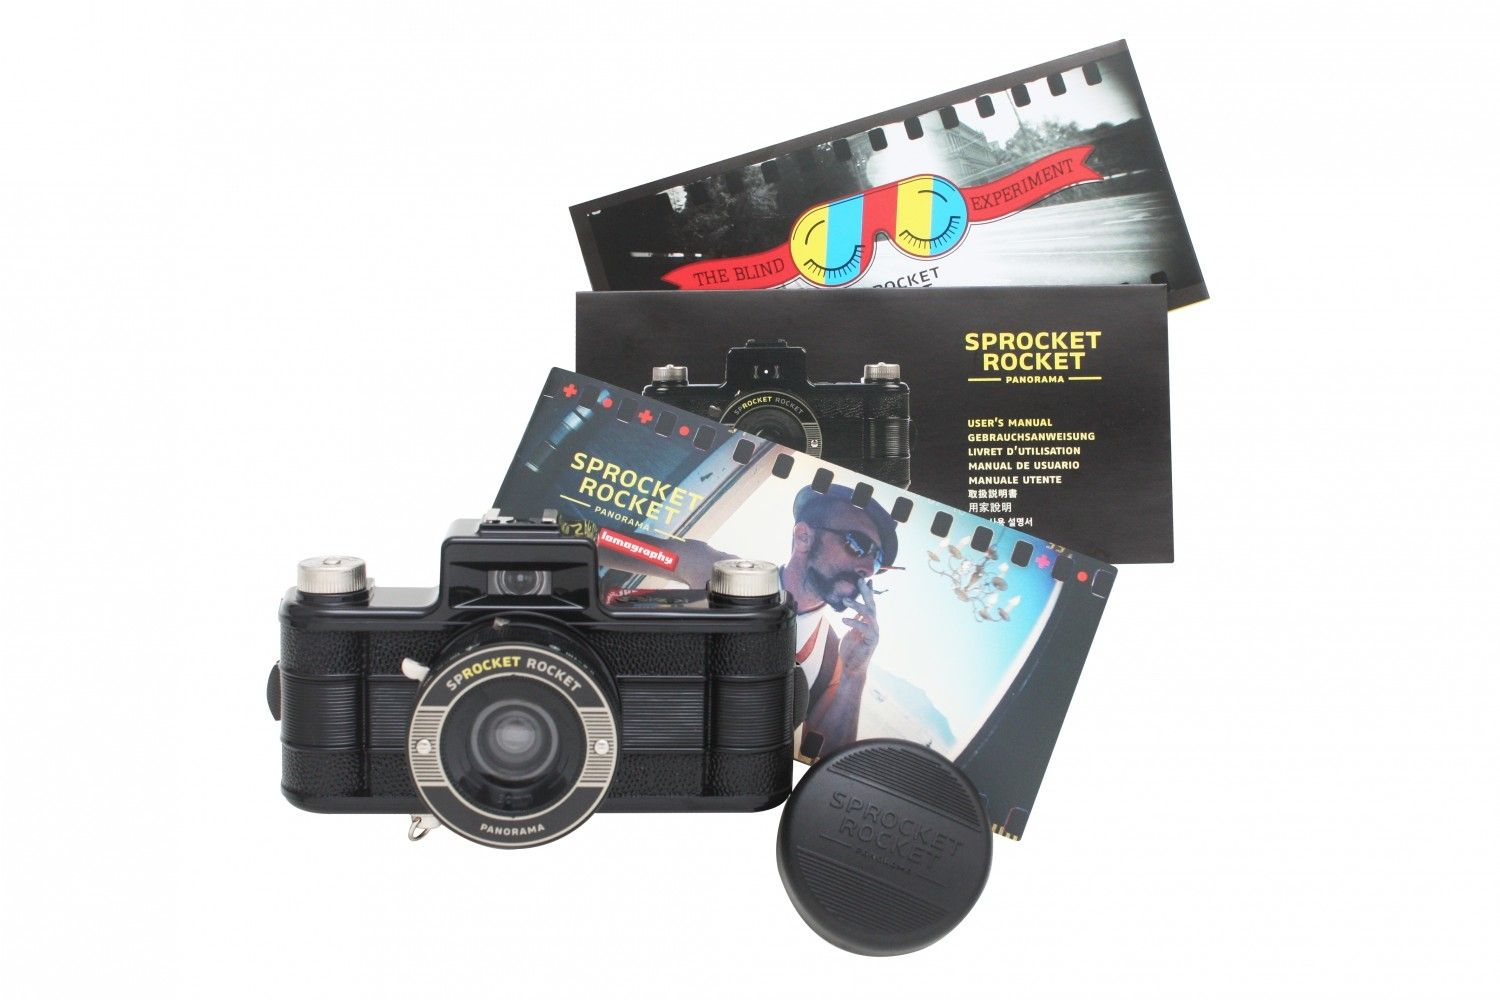 Lomography Lomo Sprocket Rocket Panoramic Camera (Black) 35mm